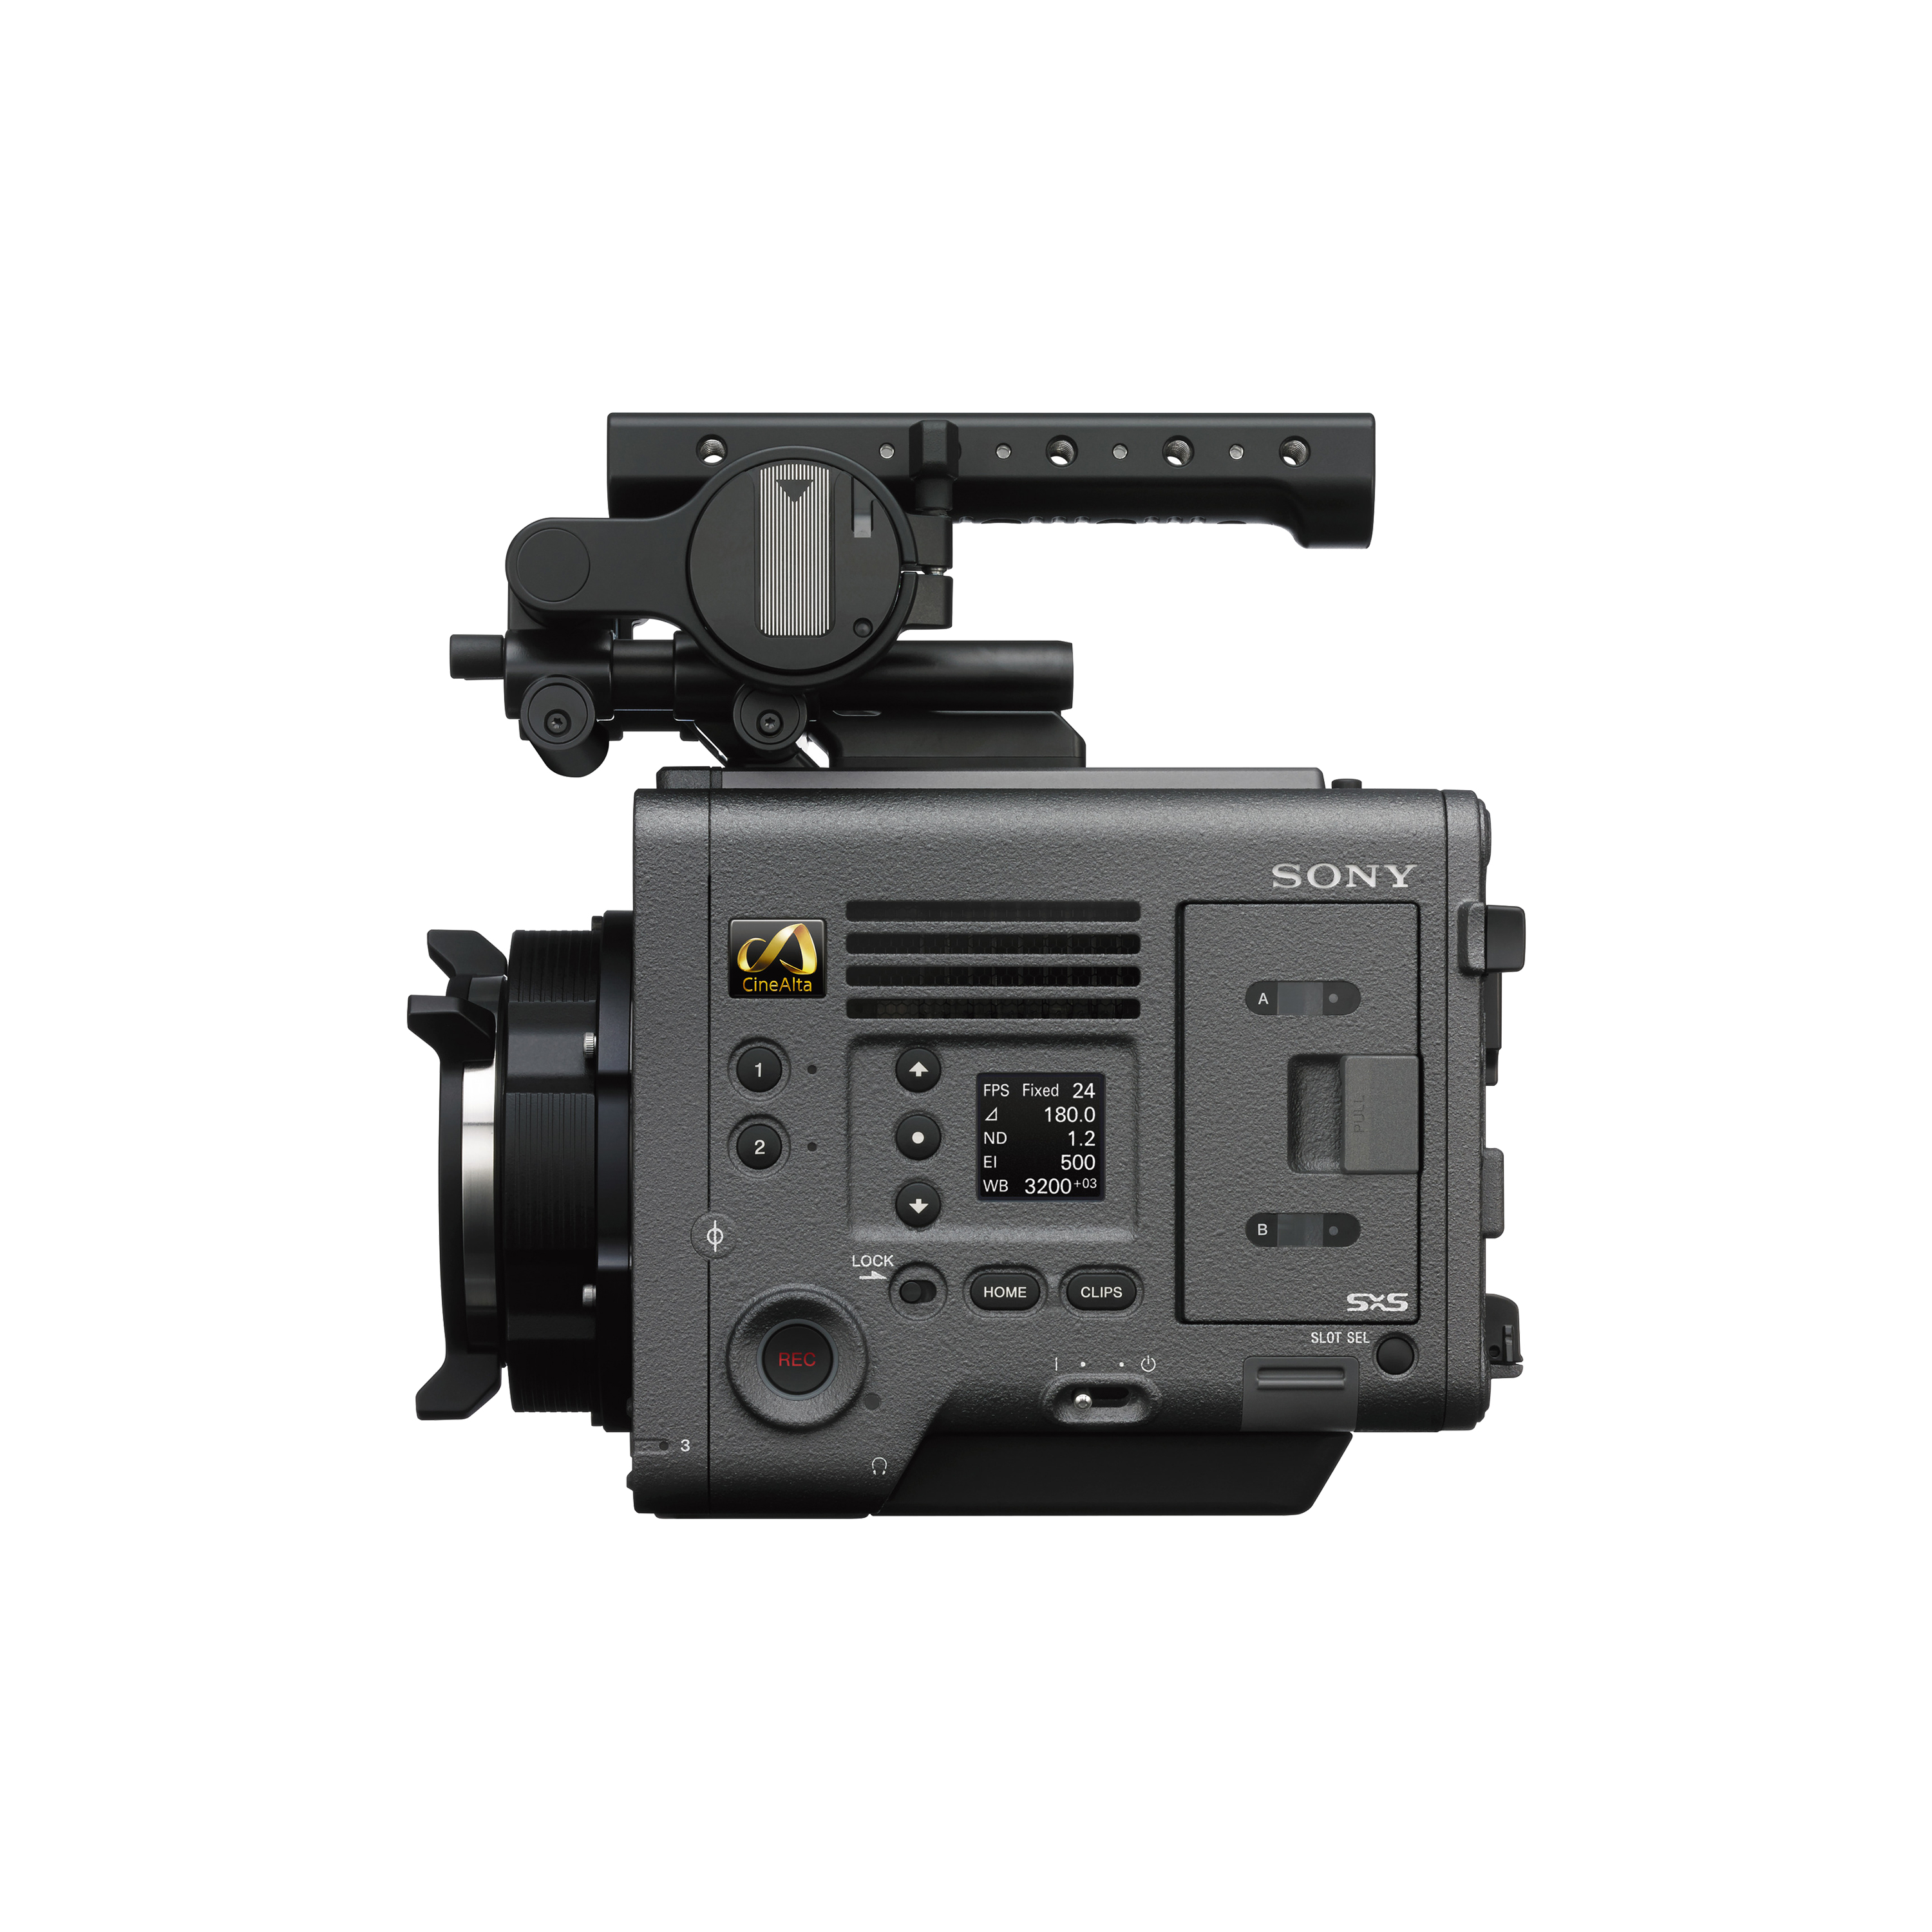 MPC-3610電影攝影機左側圖